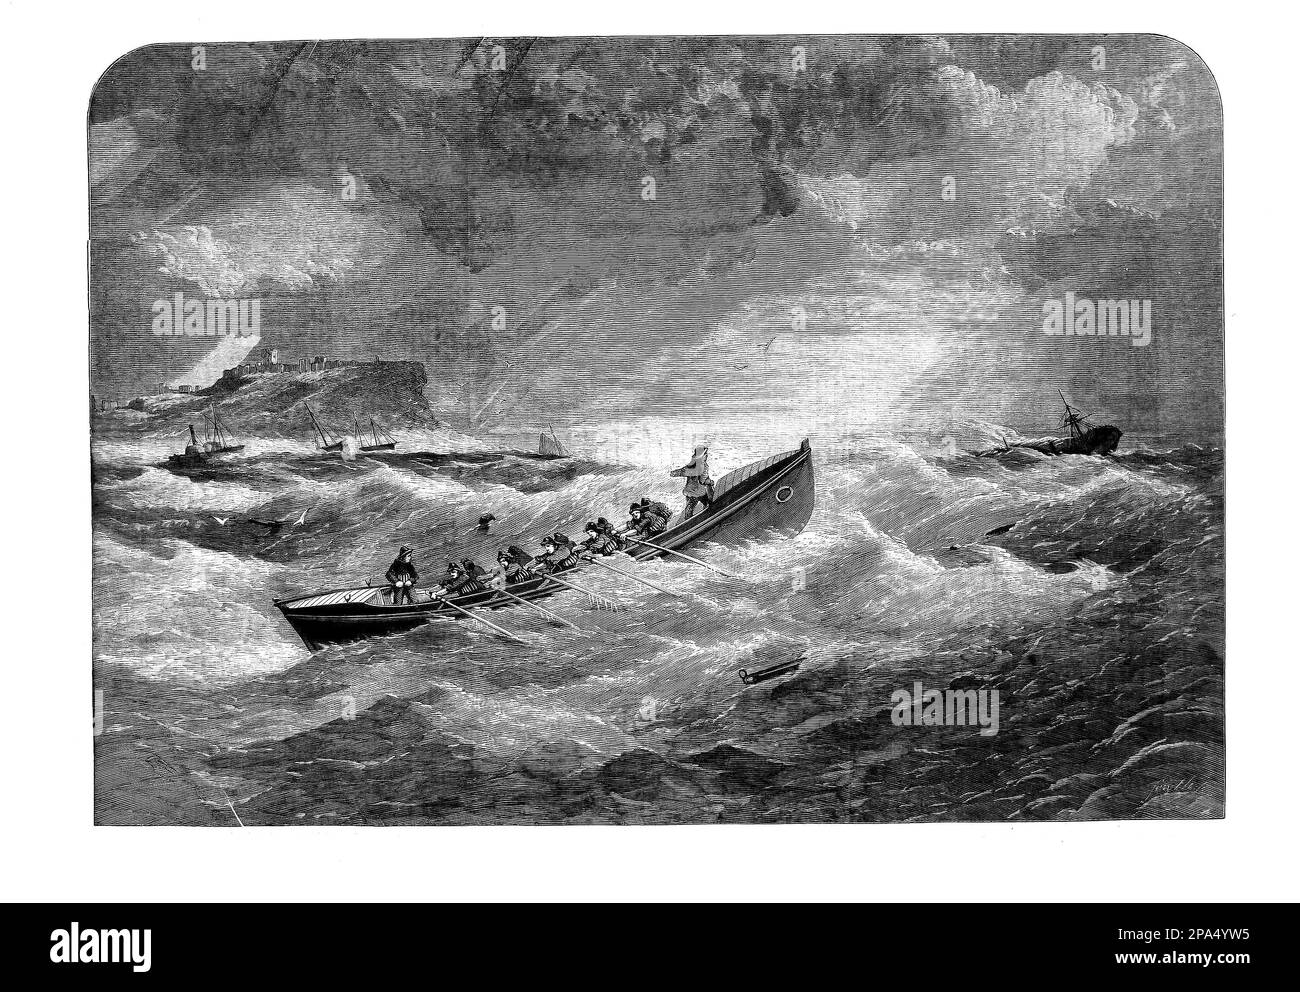 Fileys erstes Rettungsboot wurde 1804 in der Stadt an Englands Küste in North Yorkshire stationiert und 1852 zum RNLI-Aktivposten. Die Abbildung zeigt das Rettungsboot im späten Frühjahr 1860, als ein Hurrikan Filey traf und alle Boote und Netze der örtlichen Fischer zerstörte, von denen die meisten die Männer waren, die das Rettungsboot besetzten, Die Ereignisse führten zu einer Kampagne in der Times, um den Verlust der Existenzgrundlage der Fischer zu unterstützen. Stockfoto